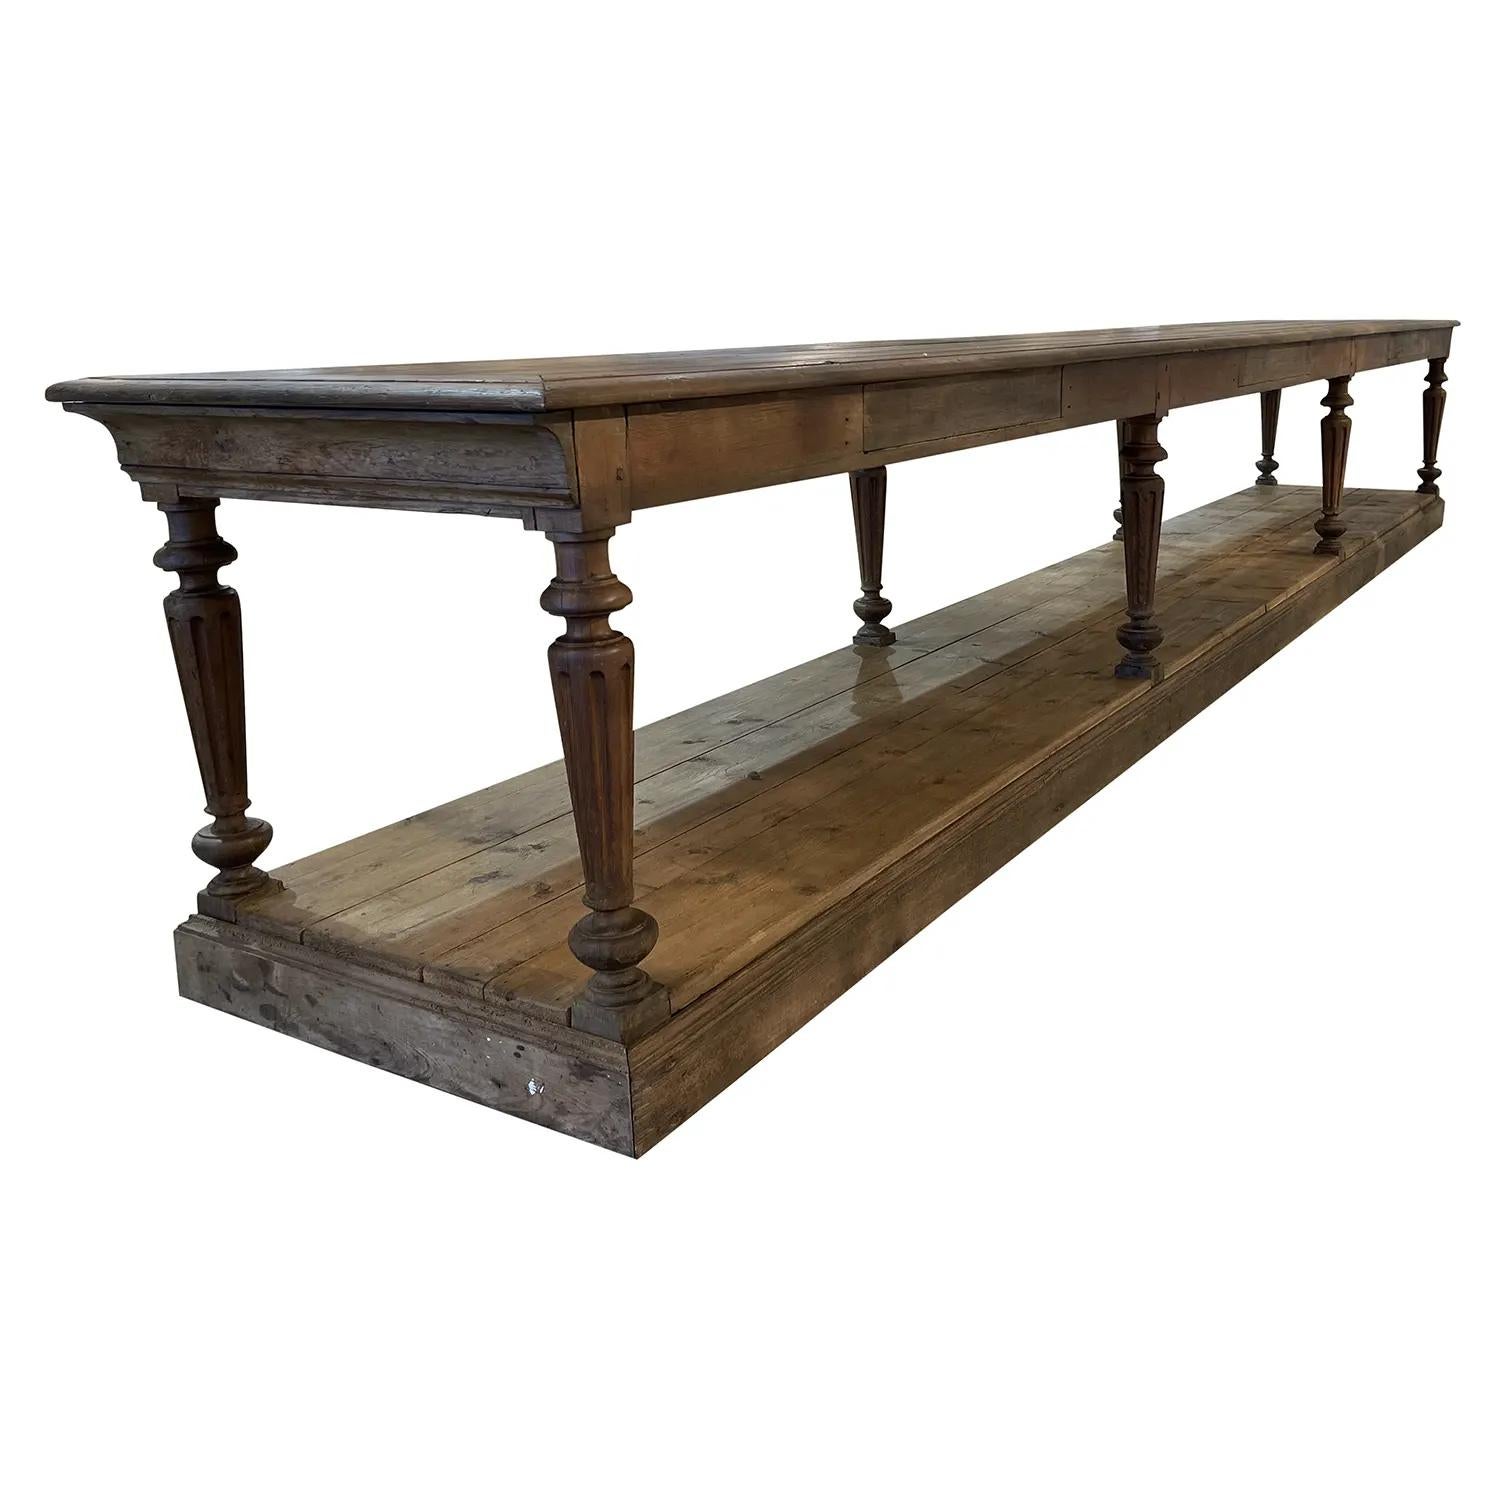 Table de tailleur, drapier, en bois de chêne du 19ème siècle, en bon état. La grande table est ornée d'un plateau frotté, composé d'une lourde étagère basse, reposant sur huit pieds ronds tournés. Légères décolorations, rayures dues à l'âge. Usures